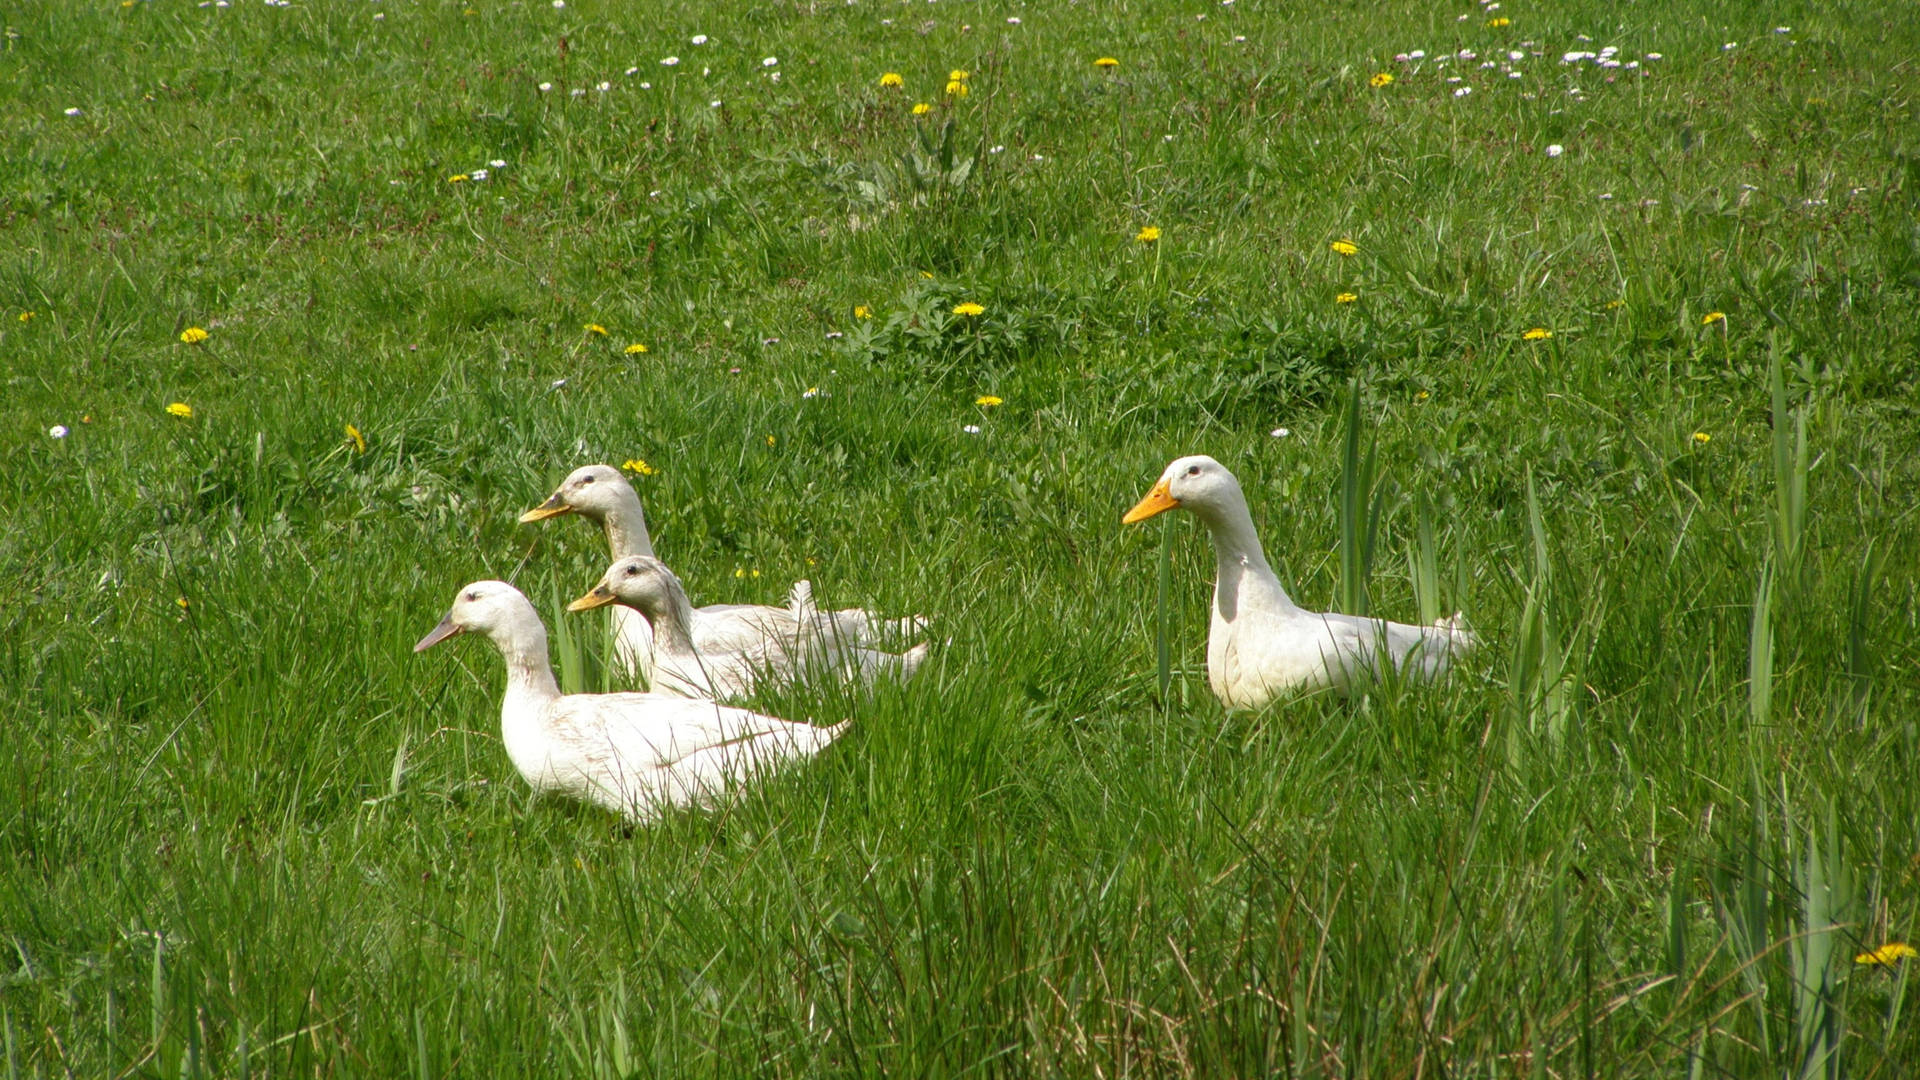 White Ducks In Grass Background